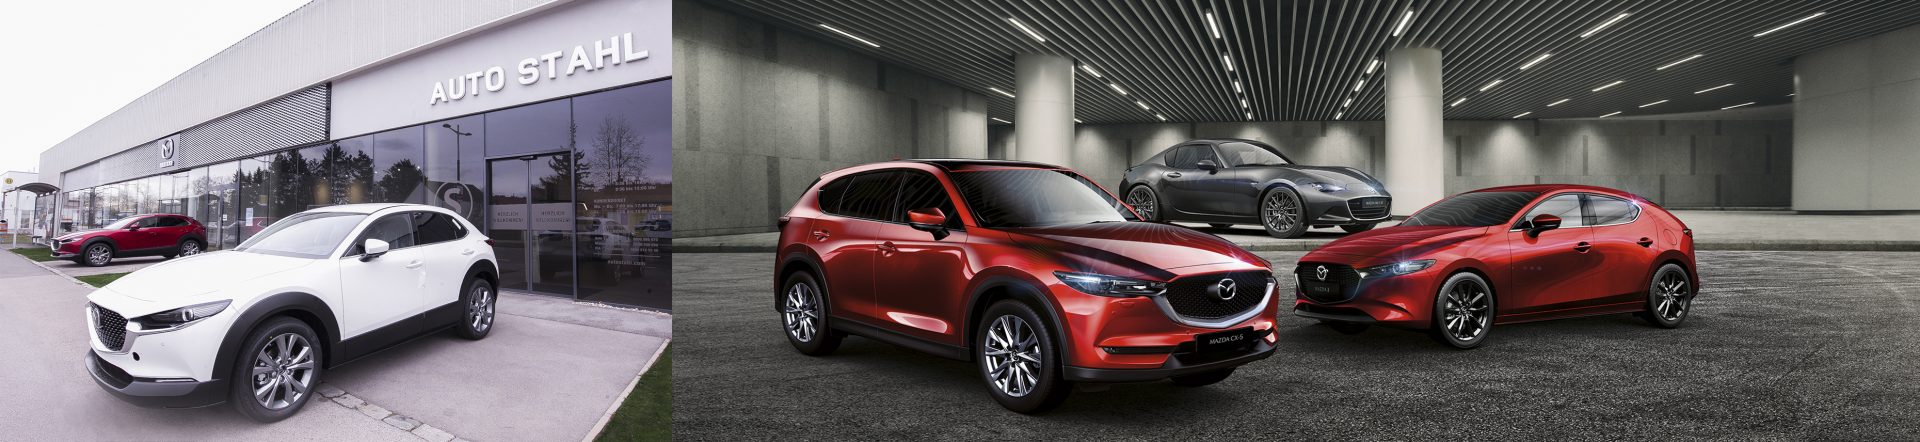 Mazda Schauraumeröffnung am 20.3.2020 bei AUTO STAHL in Wien 21, Prager Straße 278, 1210 Wien